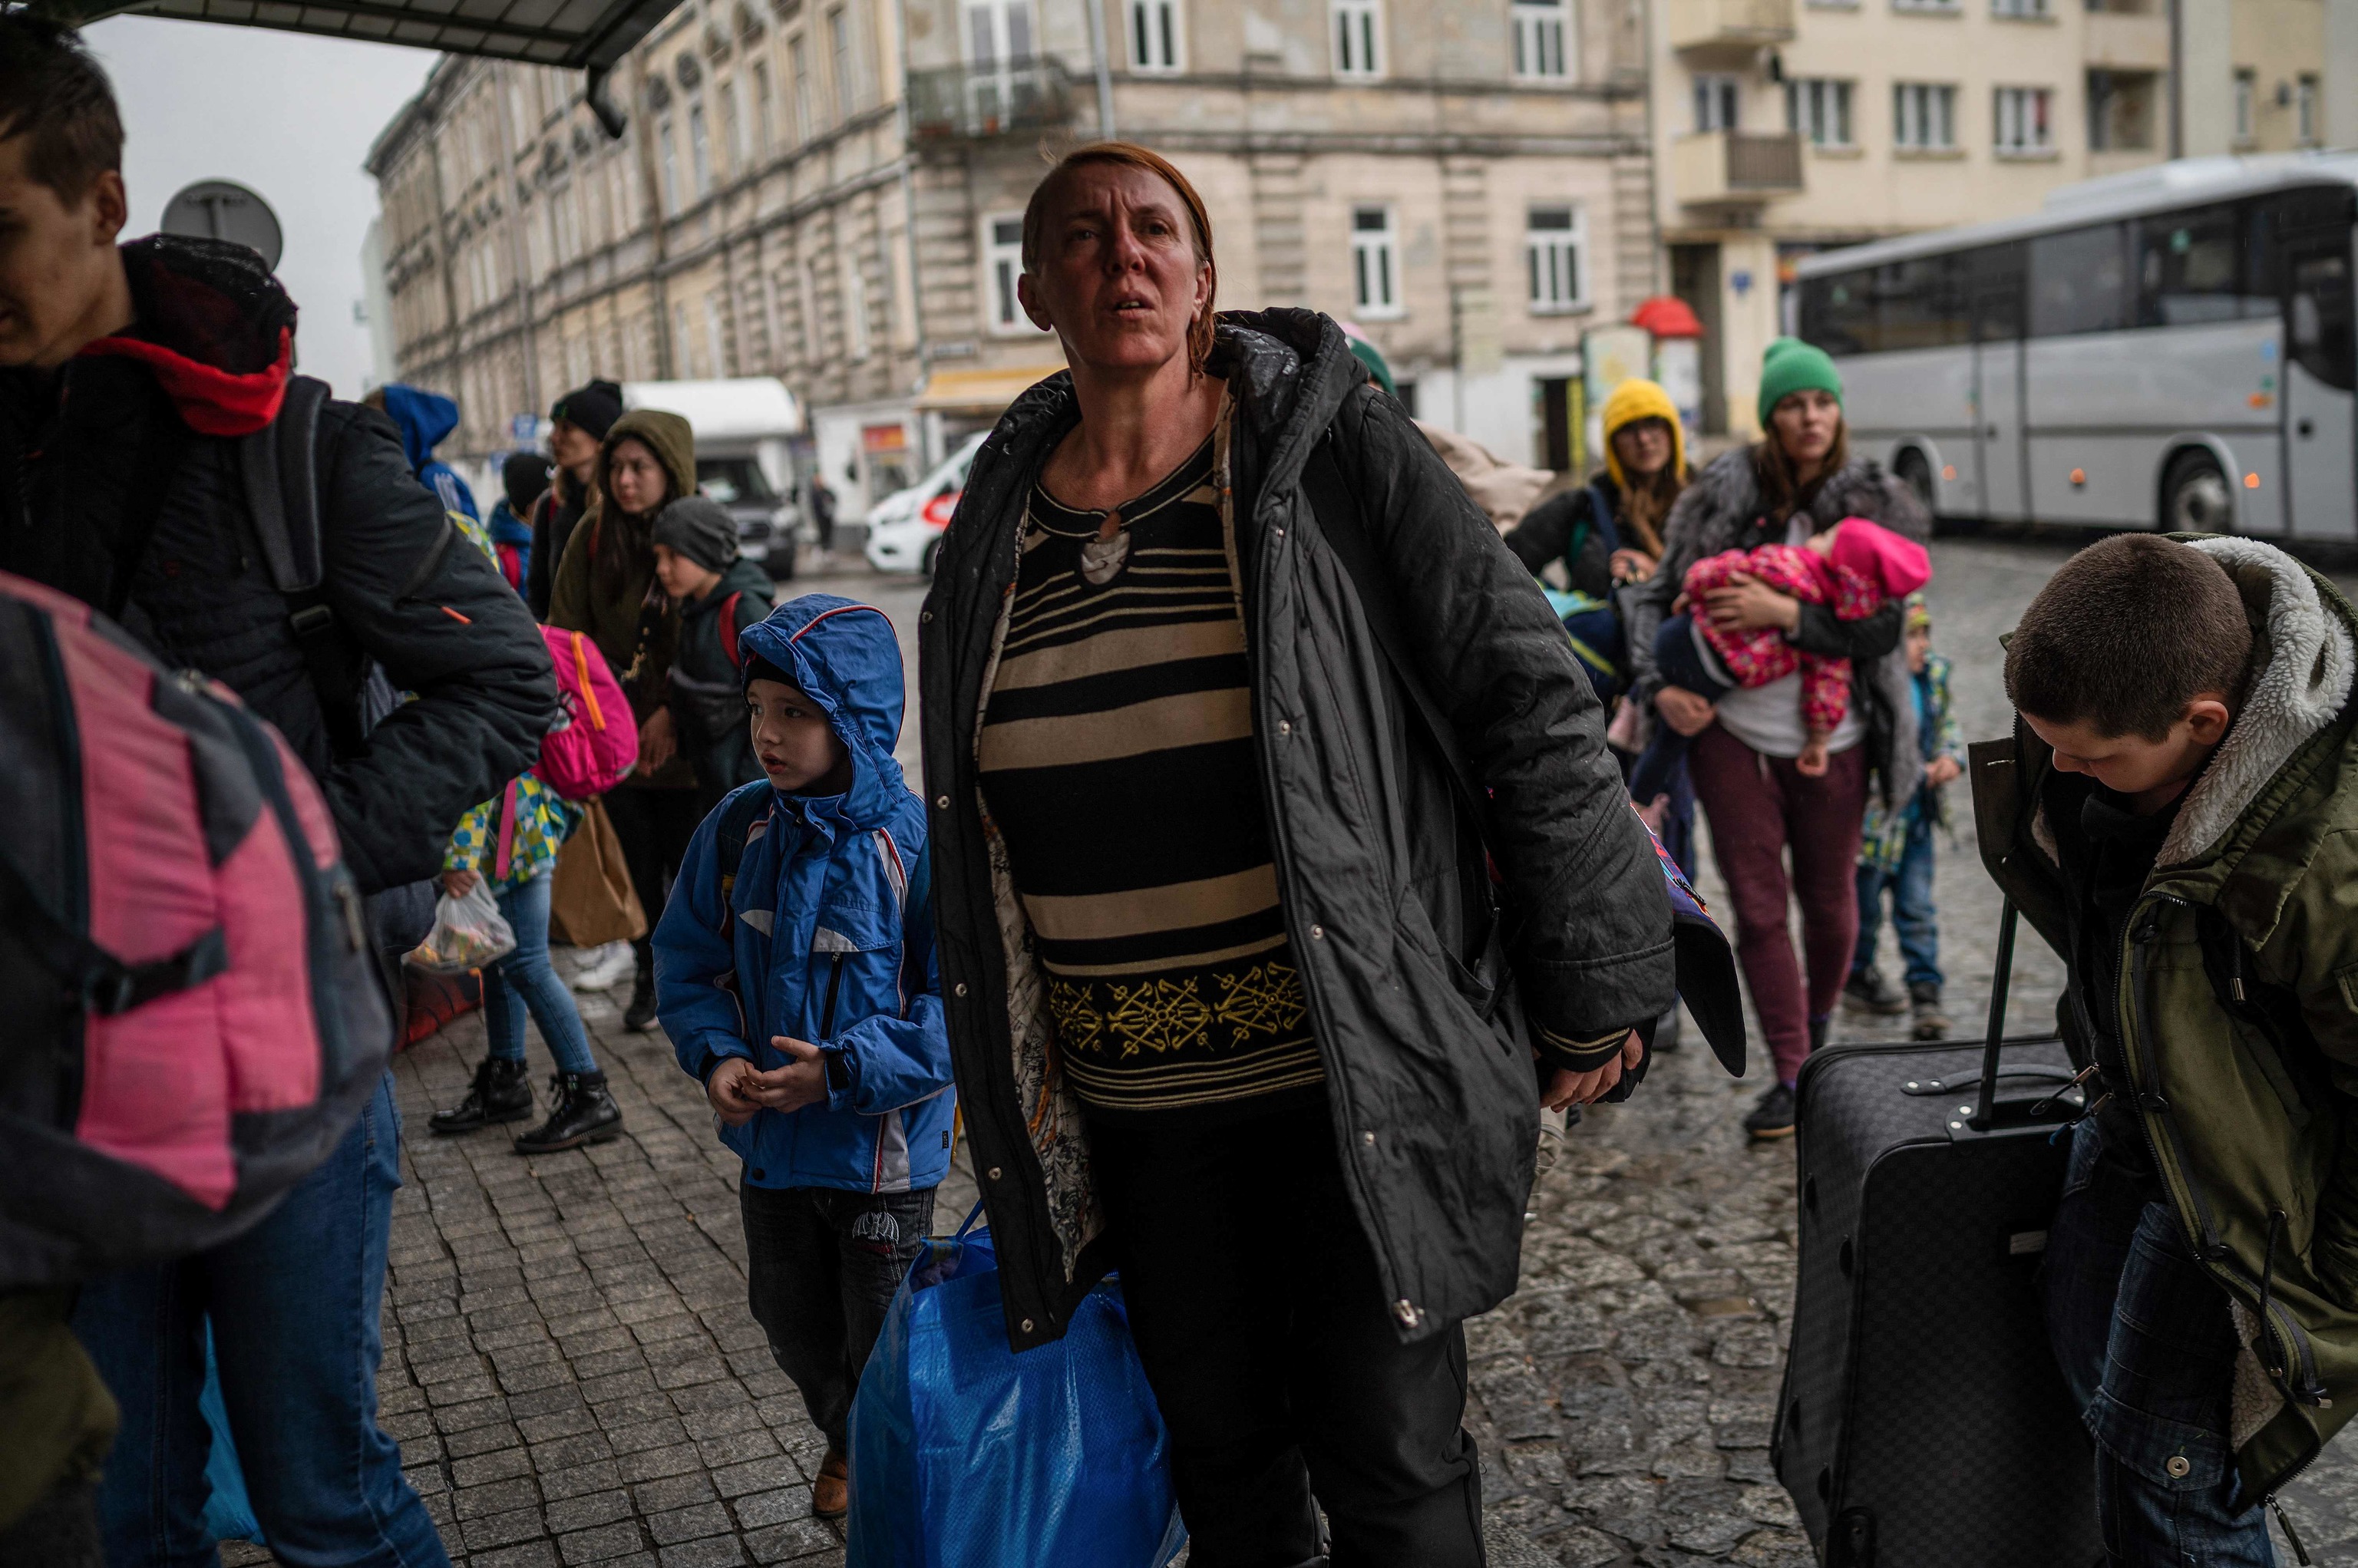 Refugiados procedentes de Ucrania llegan a la principal estación de tren de Przemysl, en el sureste de Polonia, cerca de la frontera polaco-ucraniana, el 31 de marzo de 2022, tras la invasión militar rusa lanzada sobre Ucrania.